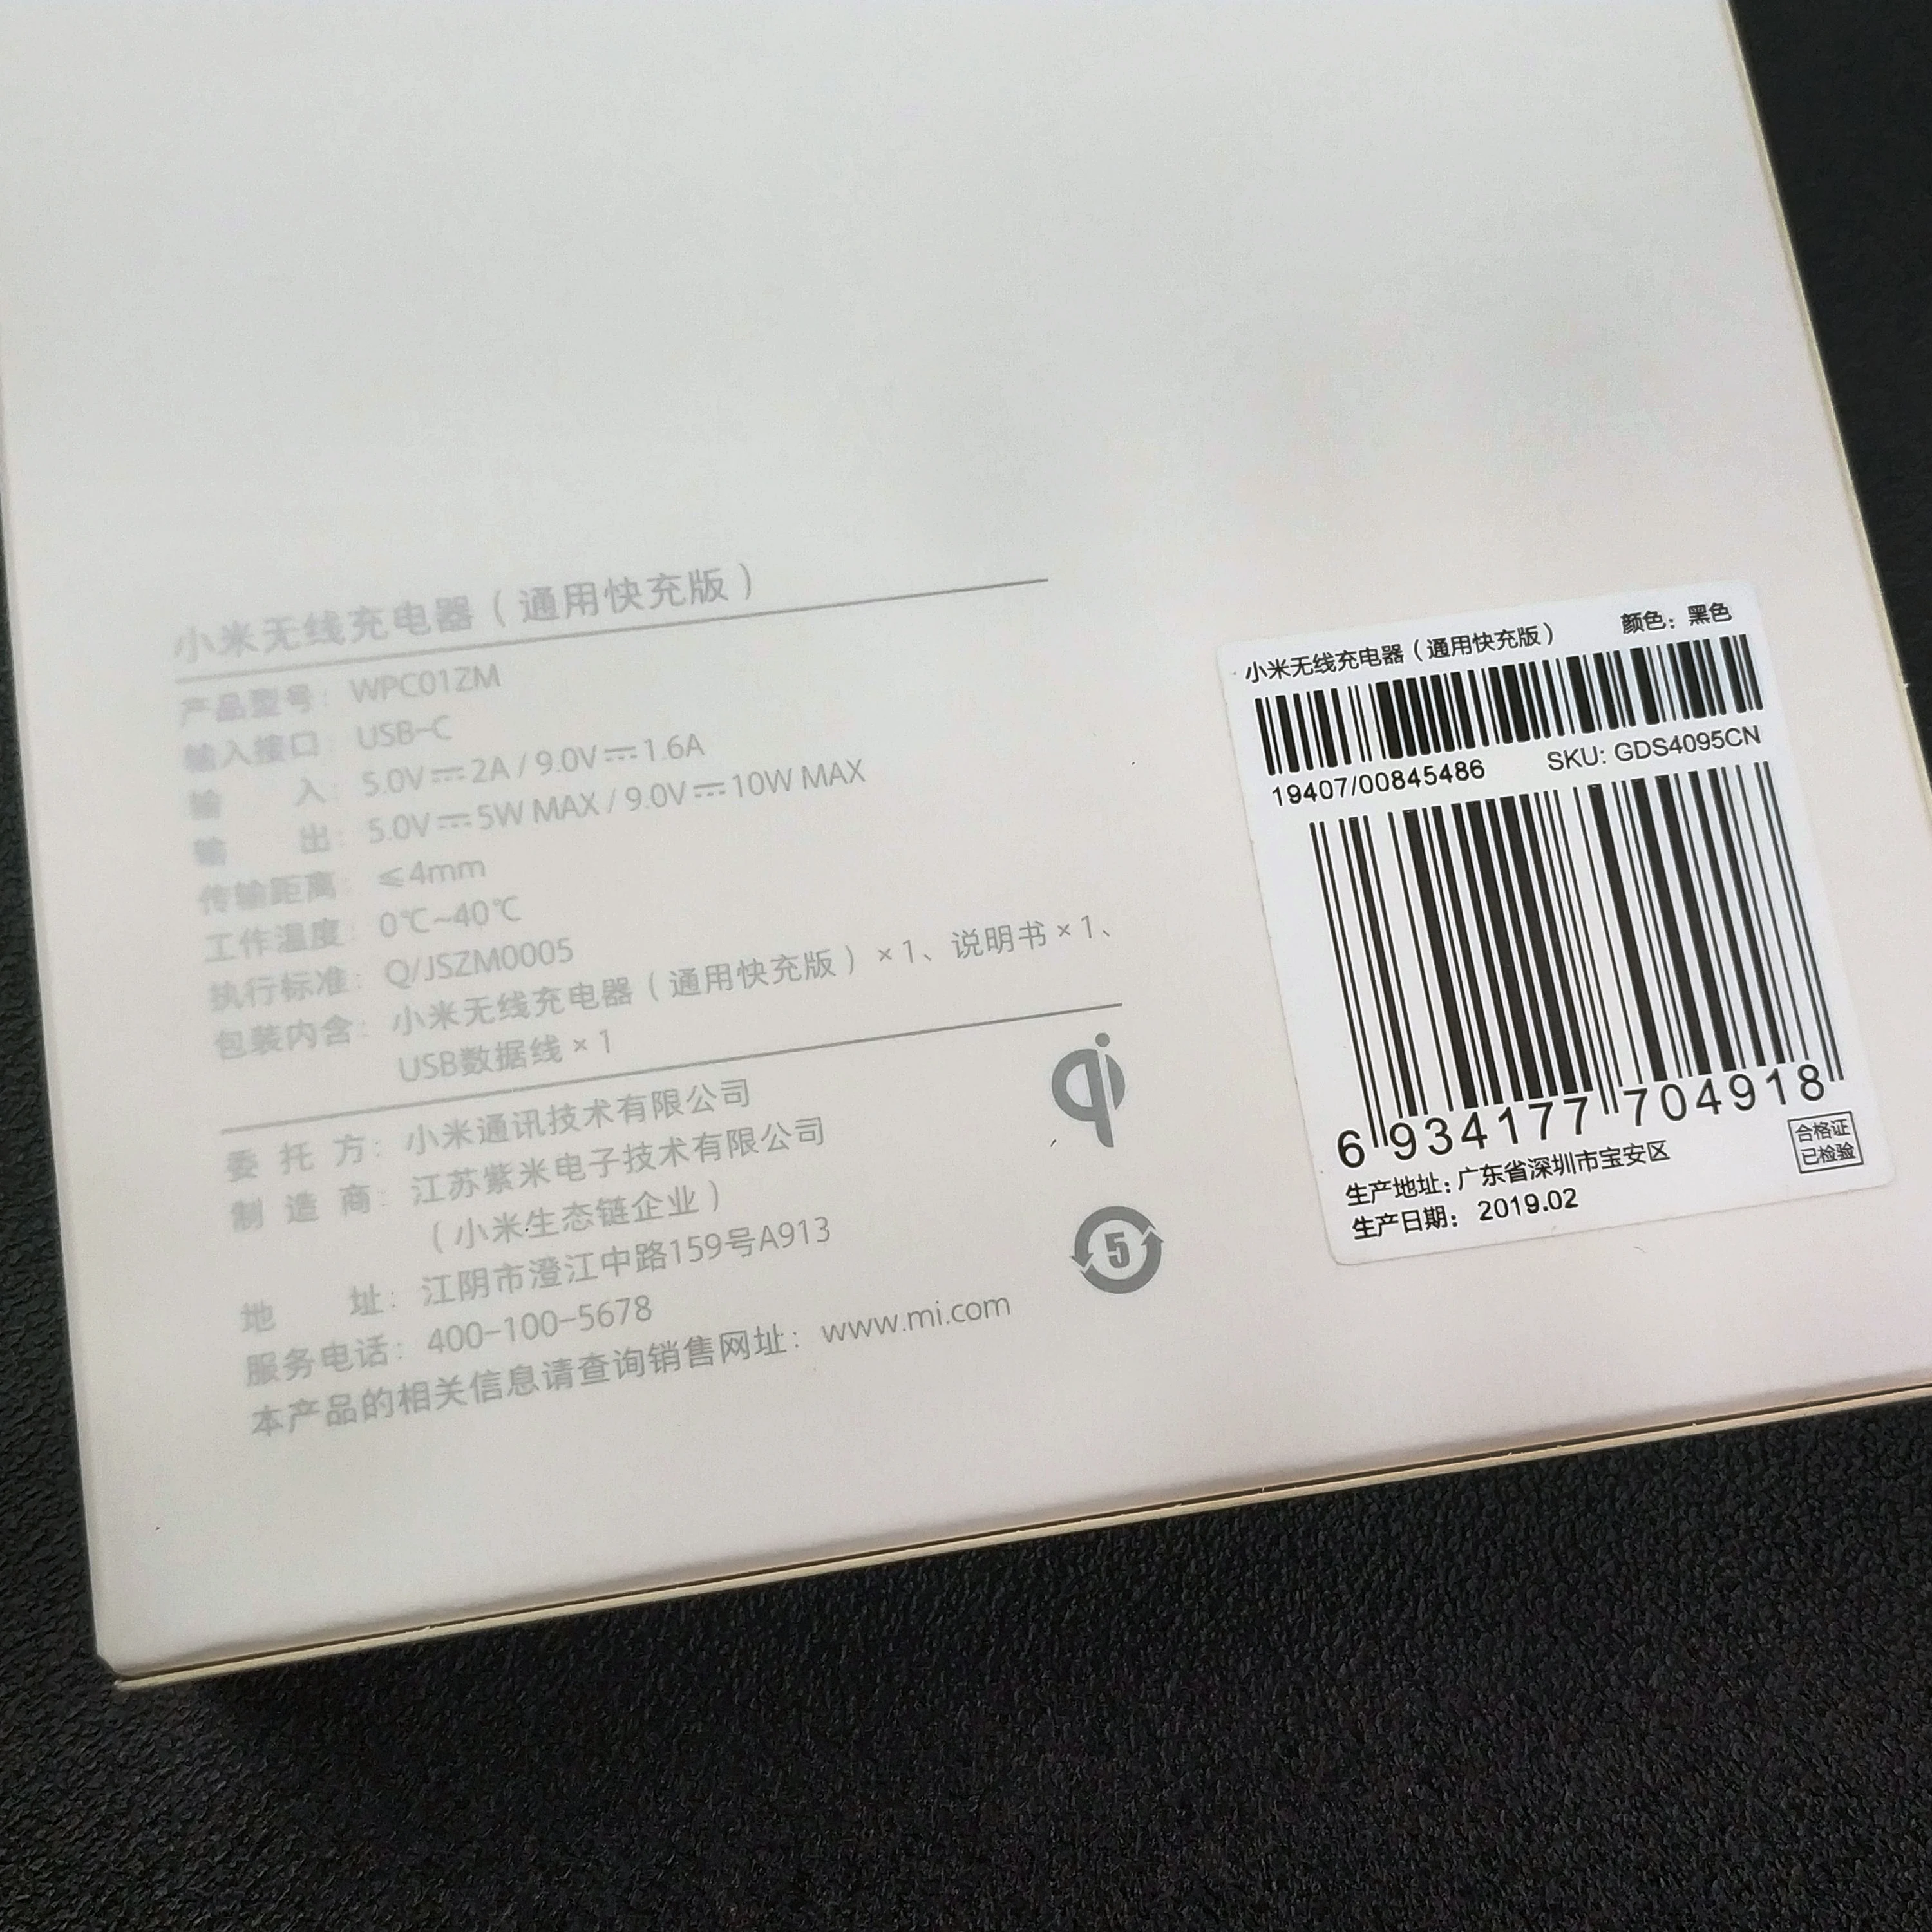 Xiaomi QI smart mix 2s Быстрое беспроводное зарядное устройство для A3 A2 Mix 3 2s Mi9 8 мобильный телефон usb type-c беспроводной зарядный адаптер